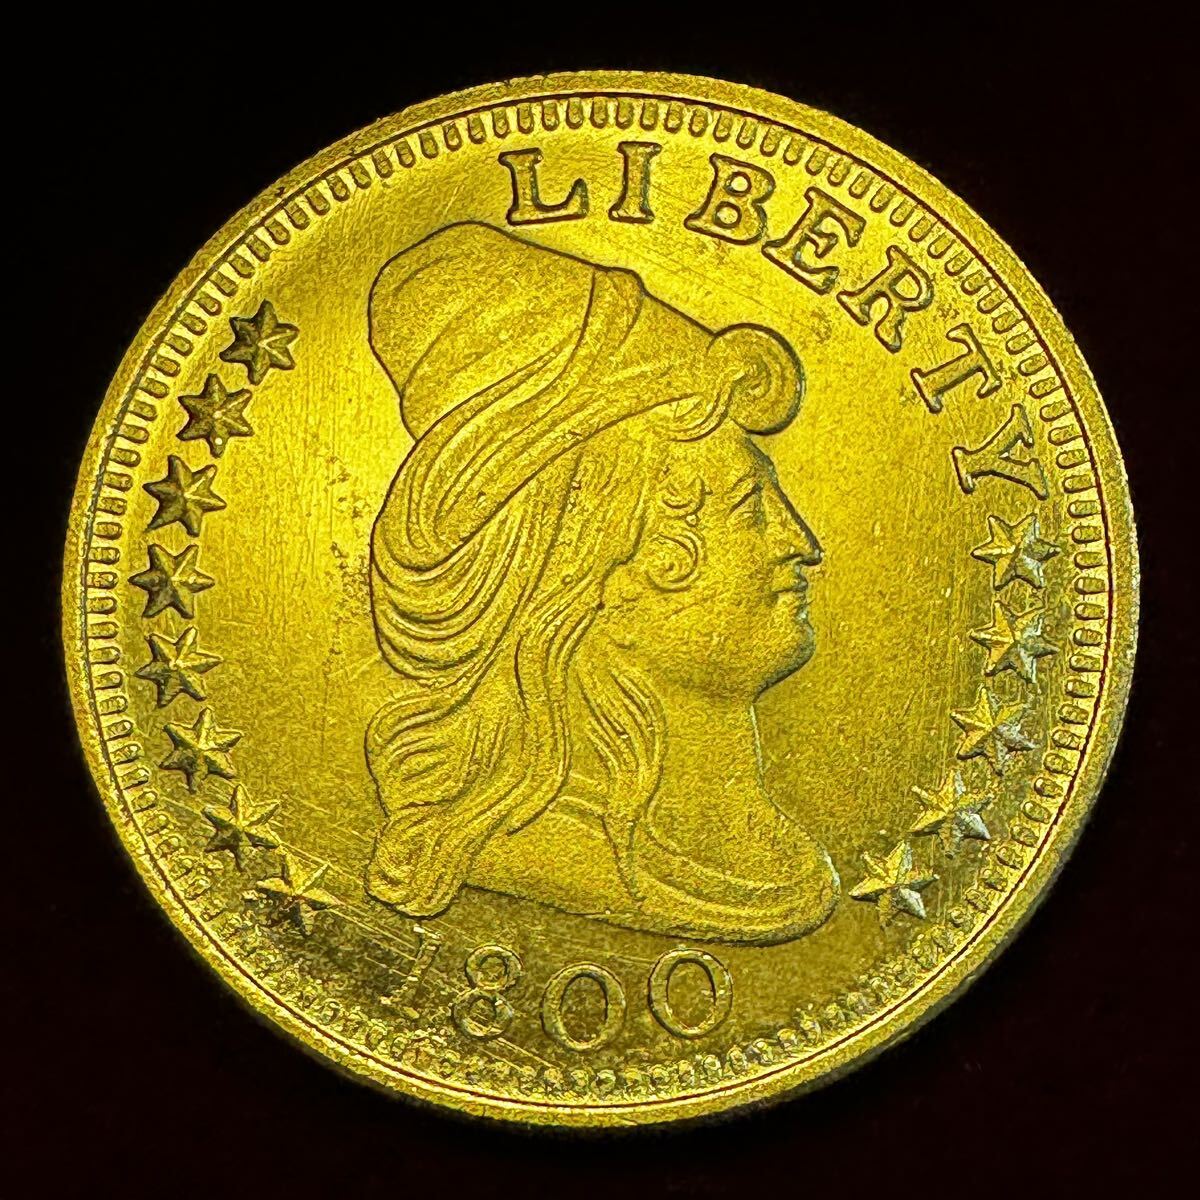 アメリカ 硬貨 古銭 自由の女神 1800年 ハクトウワシ 雲と13の星 独立十三州 盾 矢 オリーブの枝 コイン 金貨 外国古銭 海外硬貨 の画像1